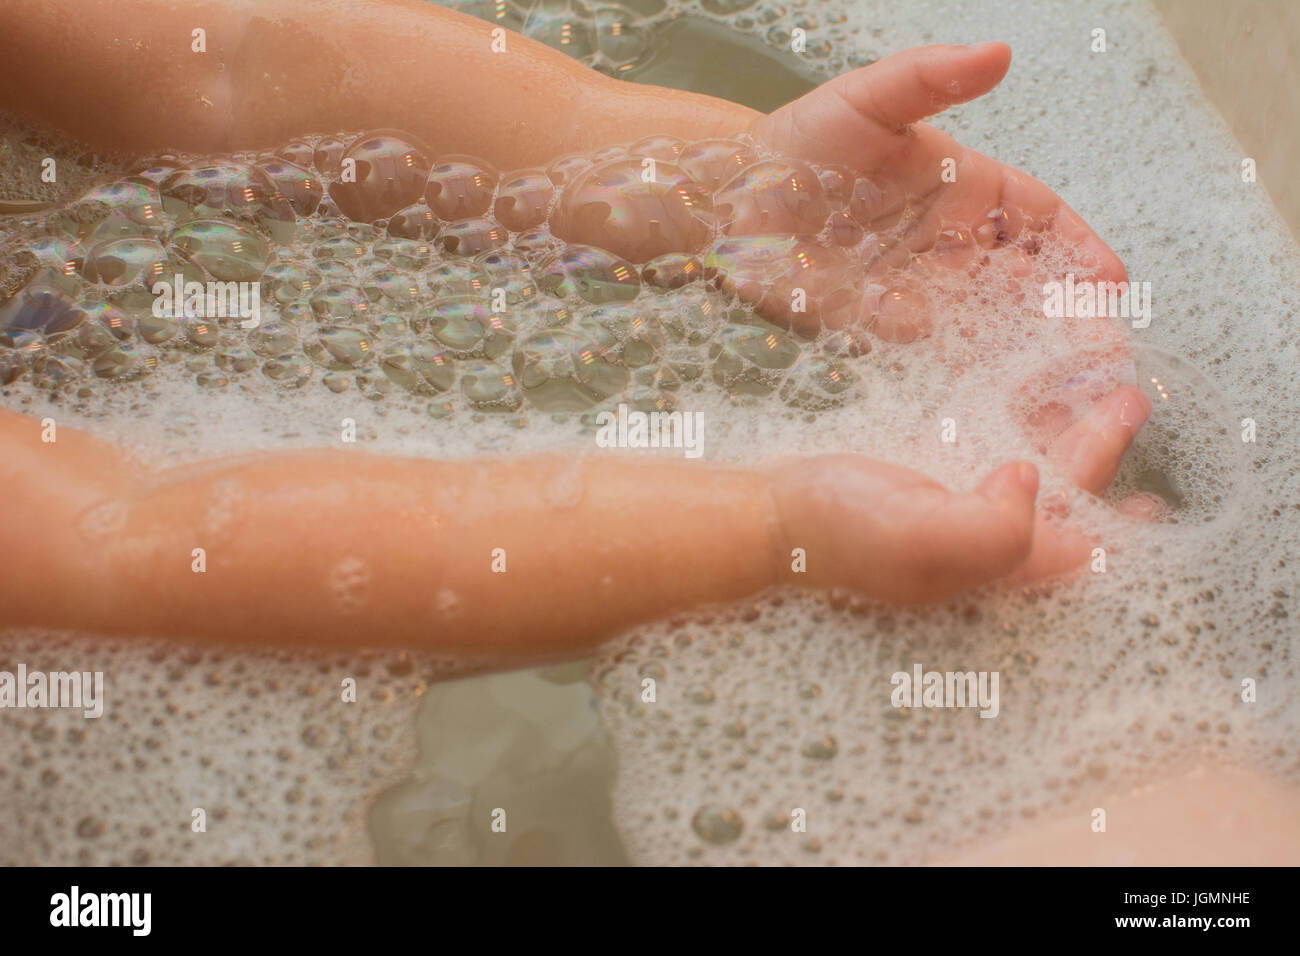 Un bambino gioca con bolle in una vasca da bagno. Foto Stock